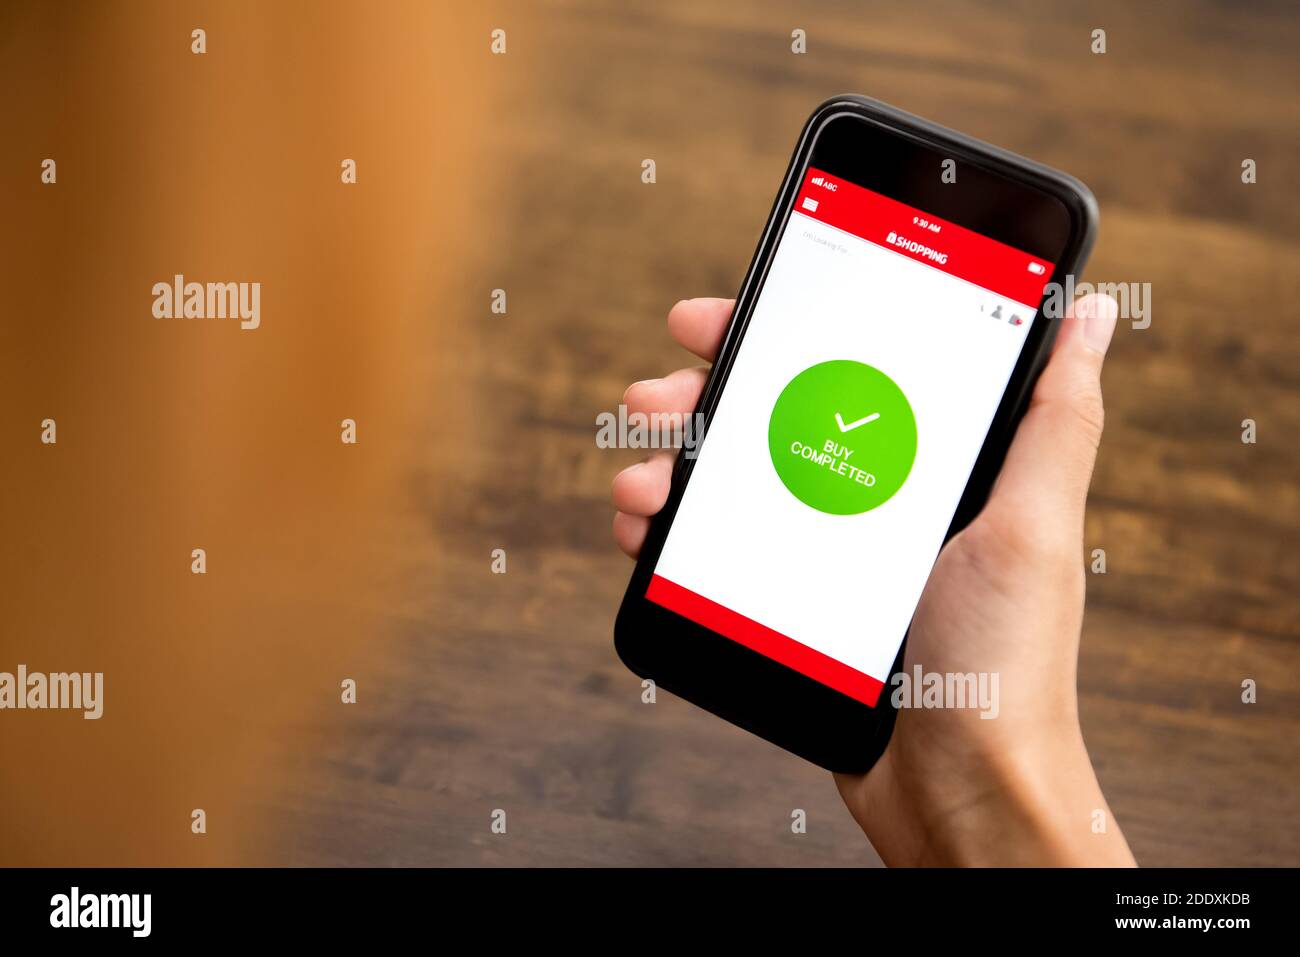 KAUFEN ABGESCHLOSSEN Zeichen erscheint im Smartphone Shopping-Anwendung Bildschirm nach Online-Zahlung durch eine Kundin Stockfoto